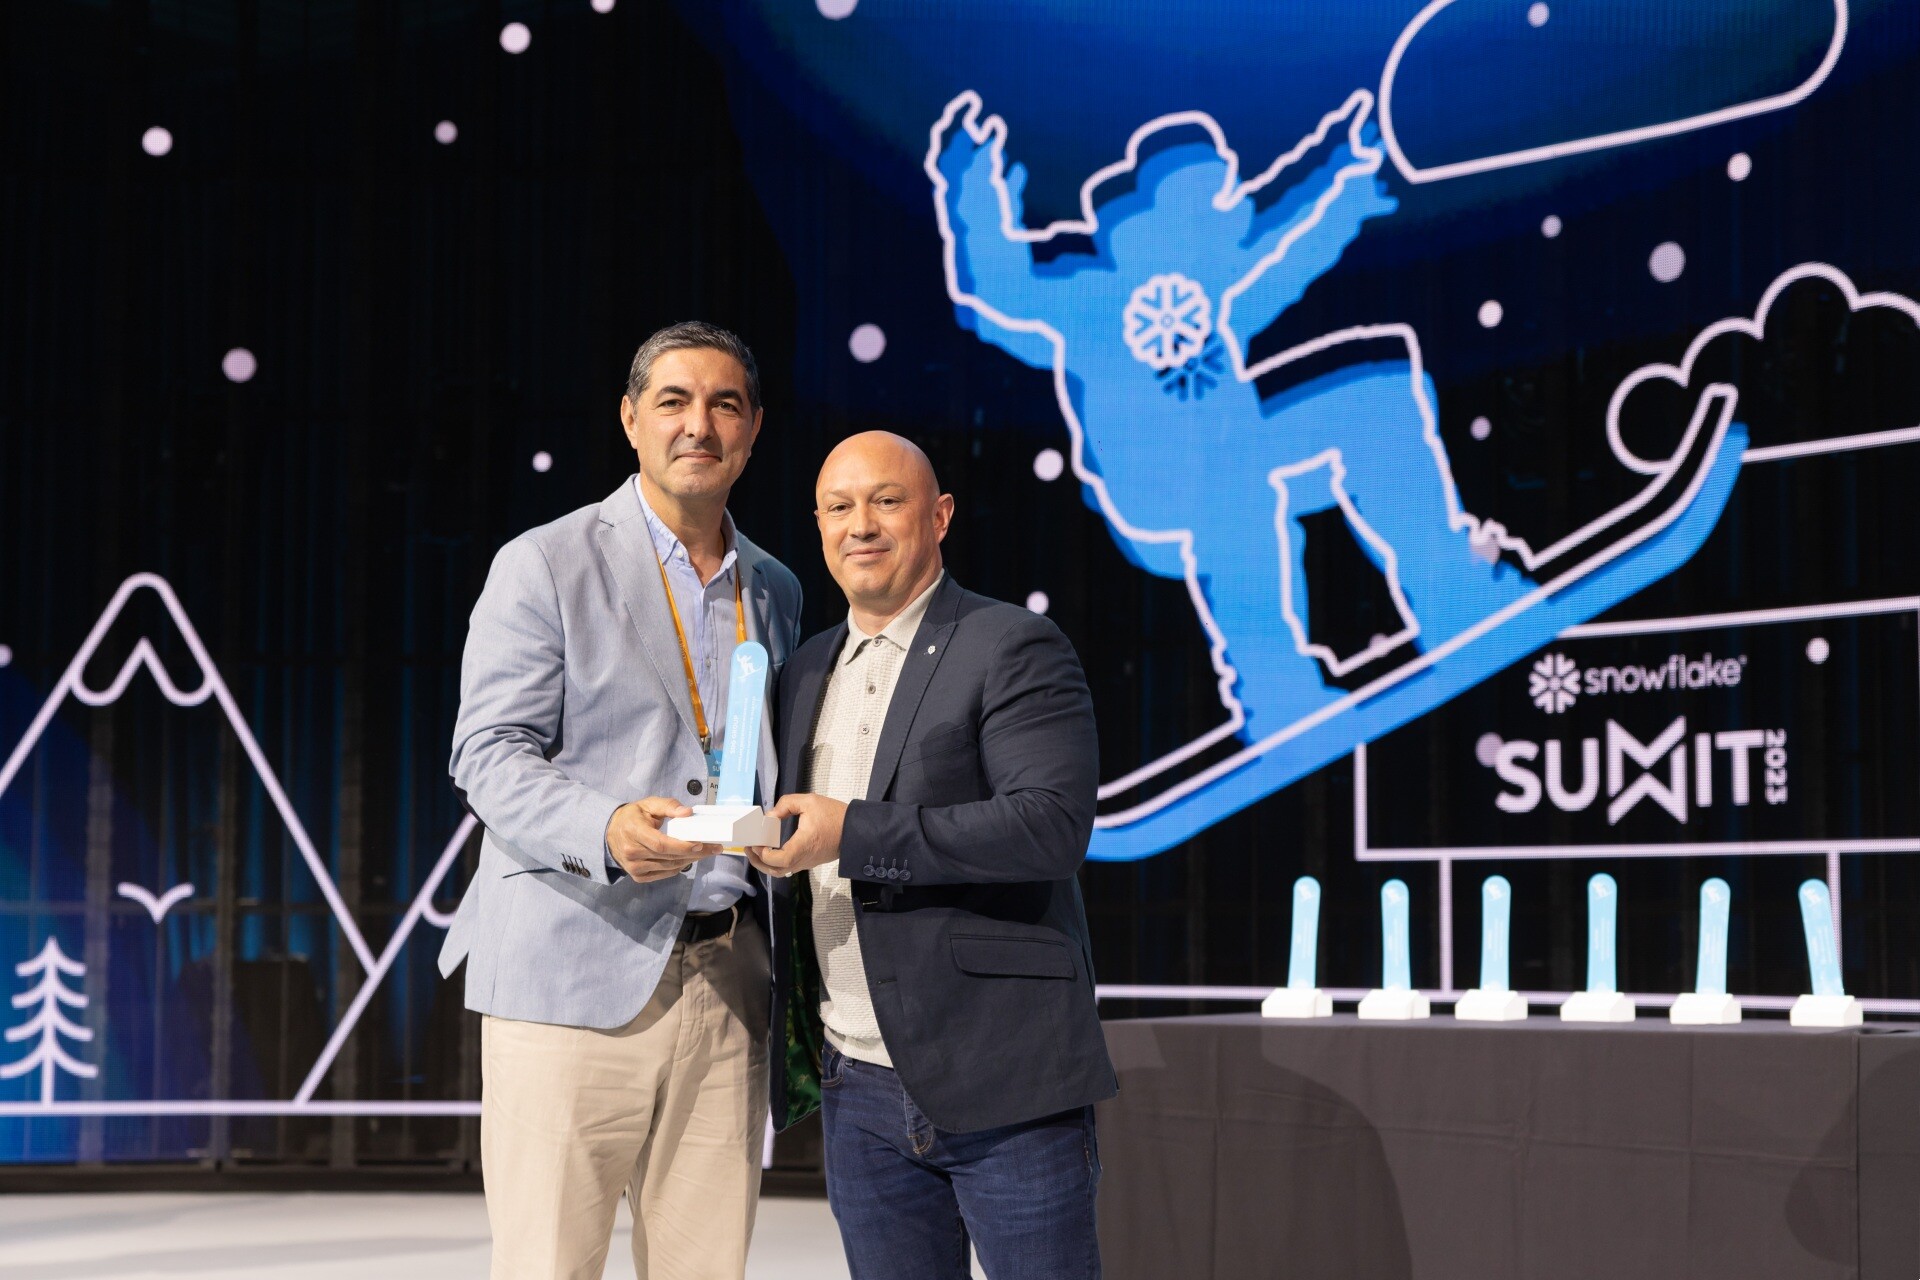 Antonio Torrado, Partner at SDG Group, Accepting the Award at the 2023 Snowflake Summit